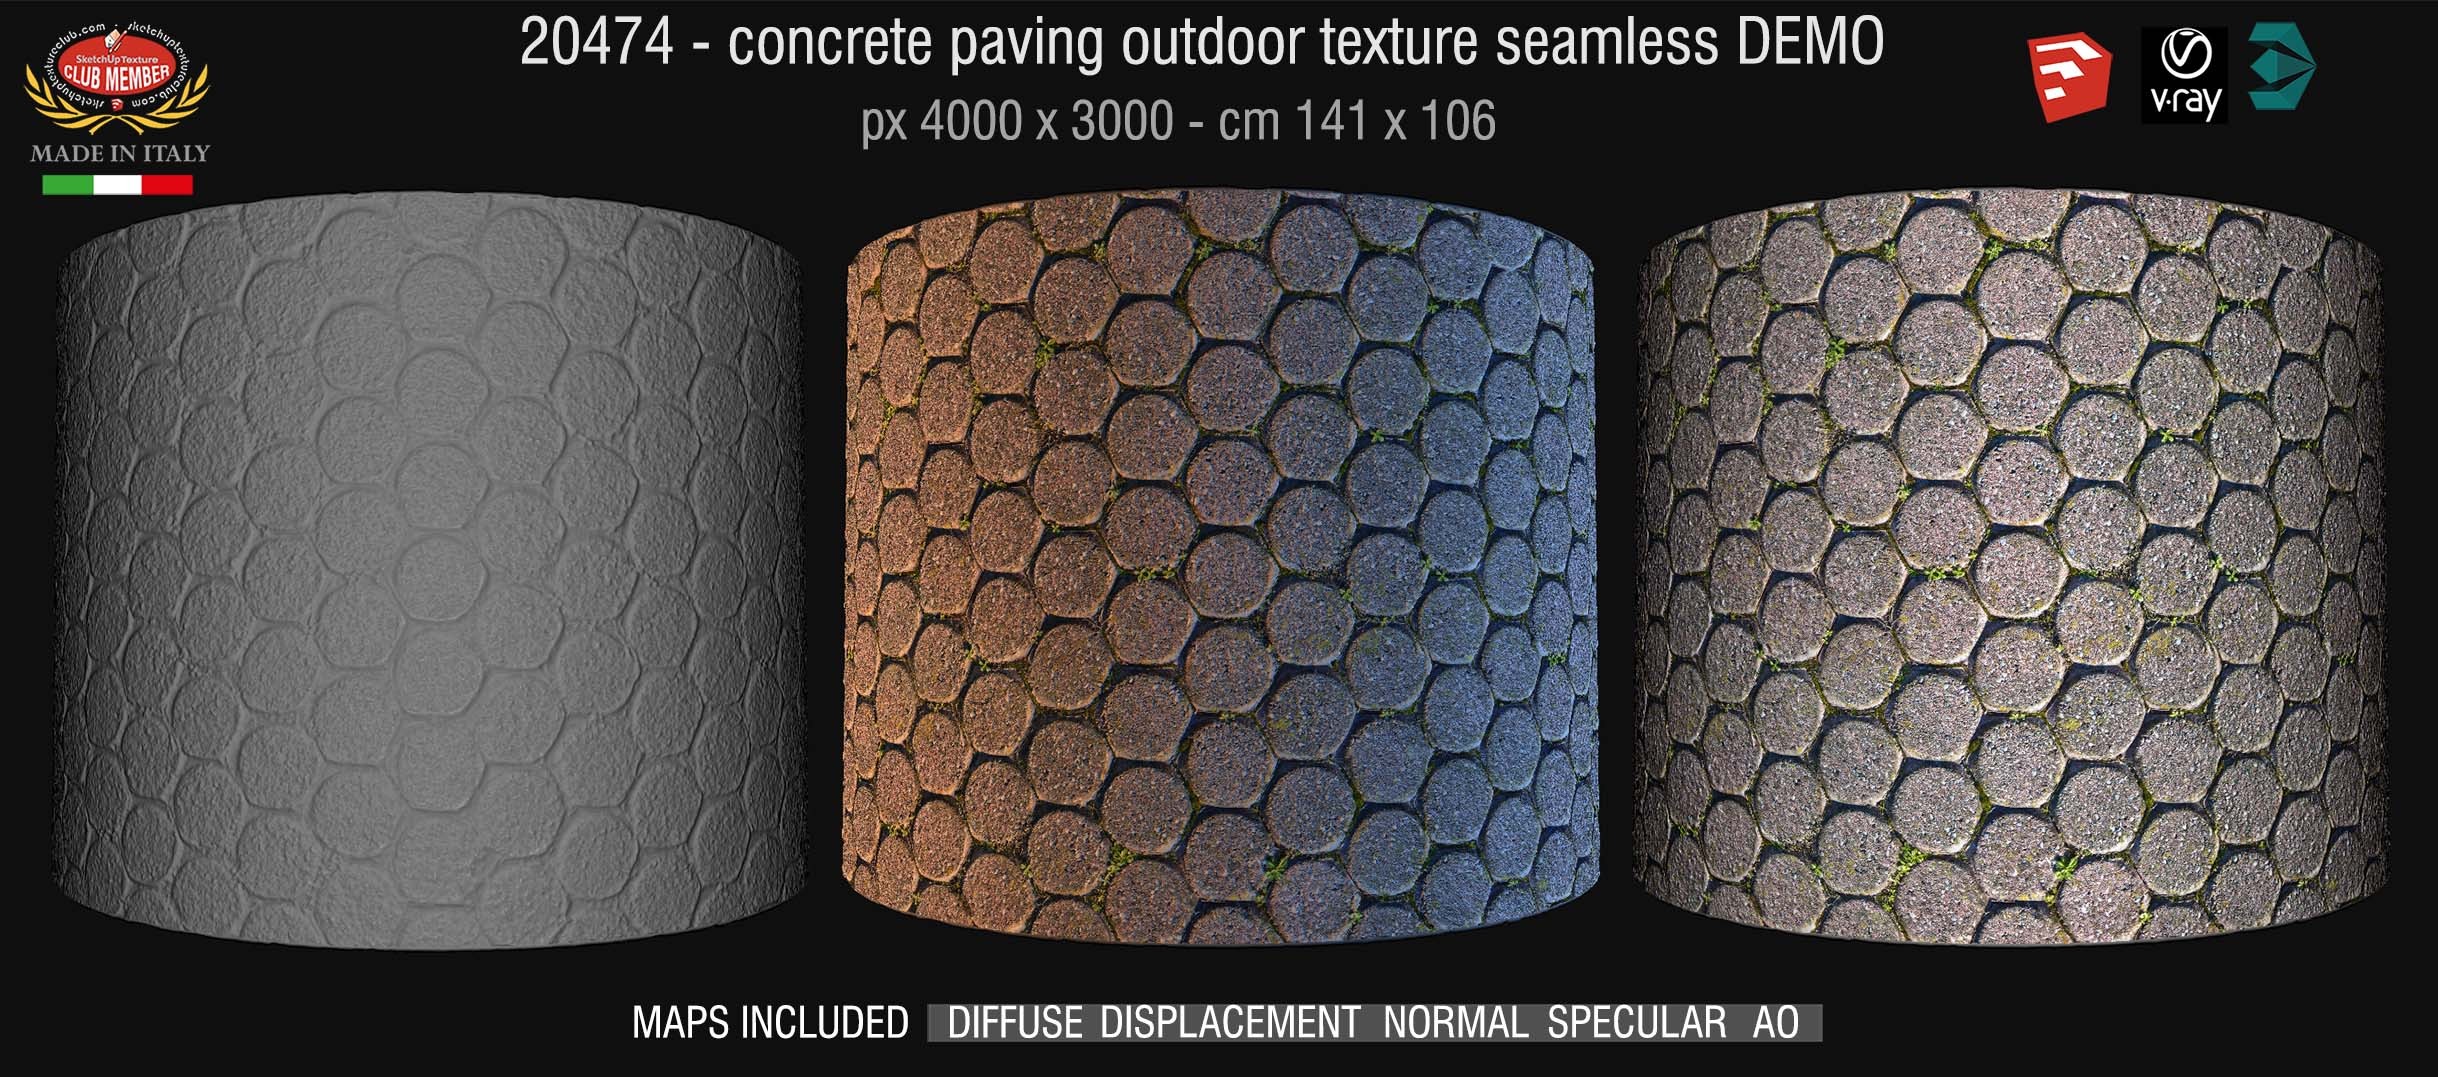 20474 HR Concrete paving outdoor texture + maps DEMO